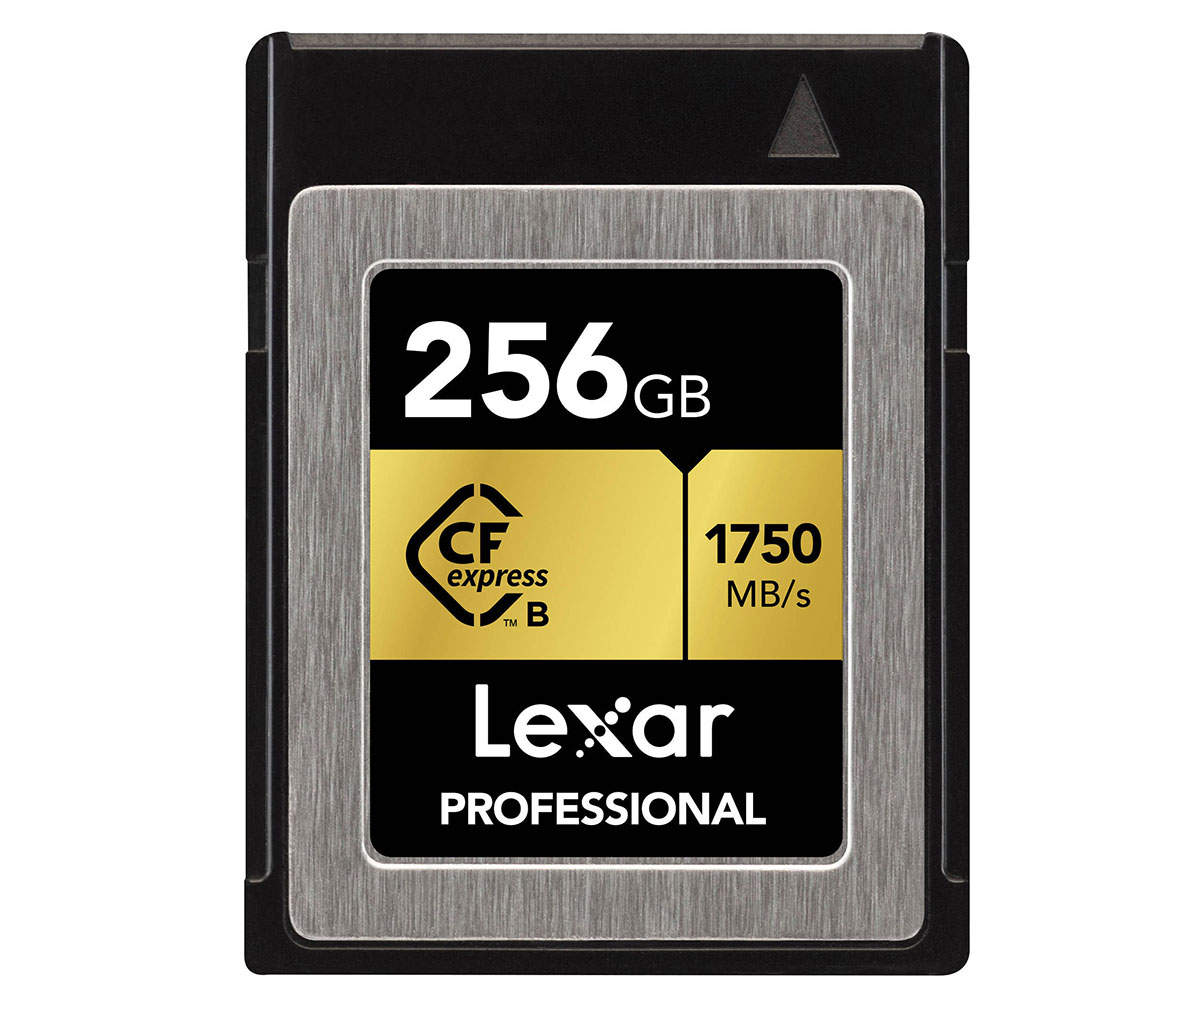 Lexar CFexpress Professional 256GB : Caratteristiche e Opinioni | JuzaPhoto